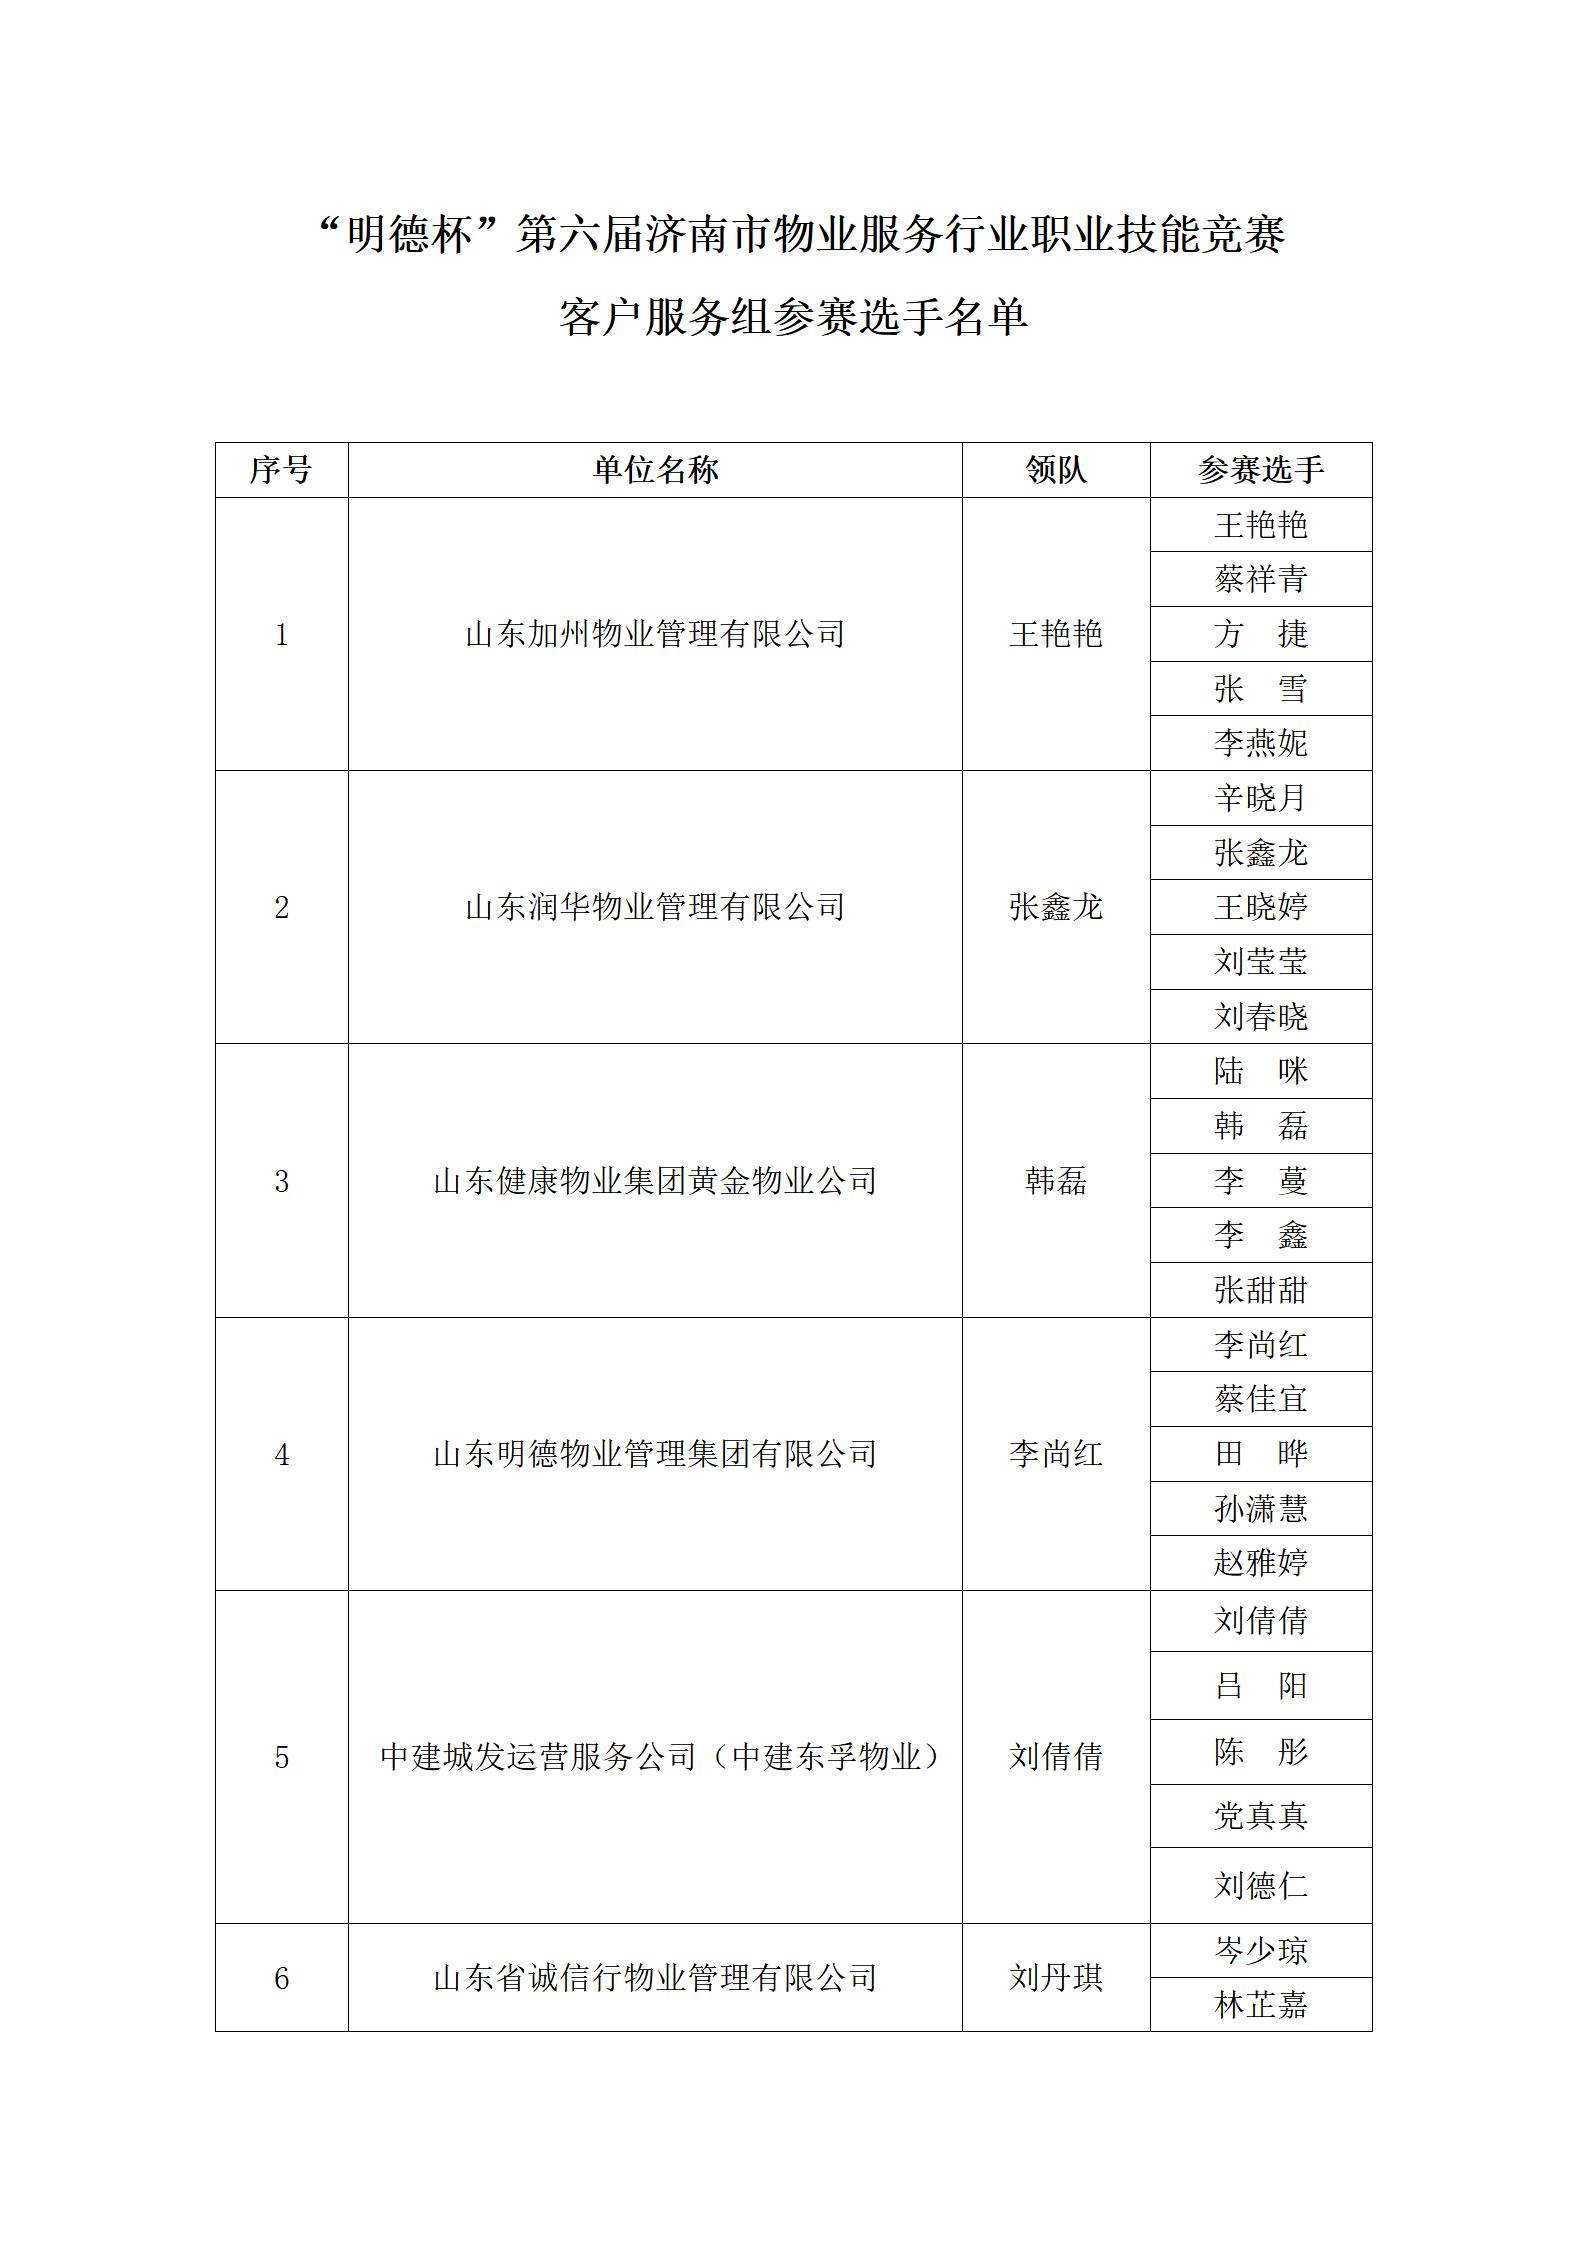 关于“明德杯”第六届济南市物业服务行业职业技能竞赛选手名单的公示_11